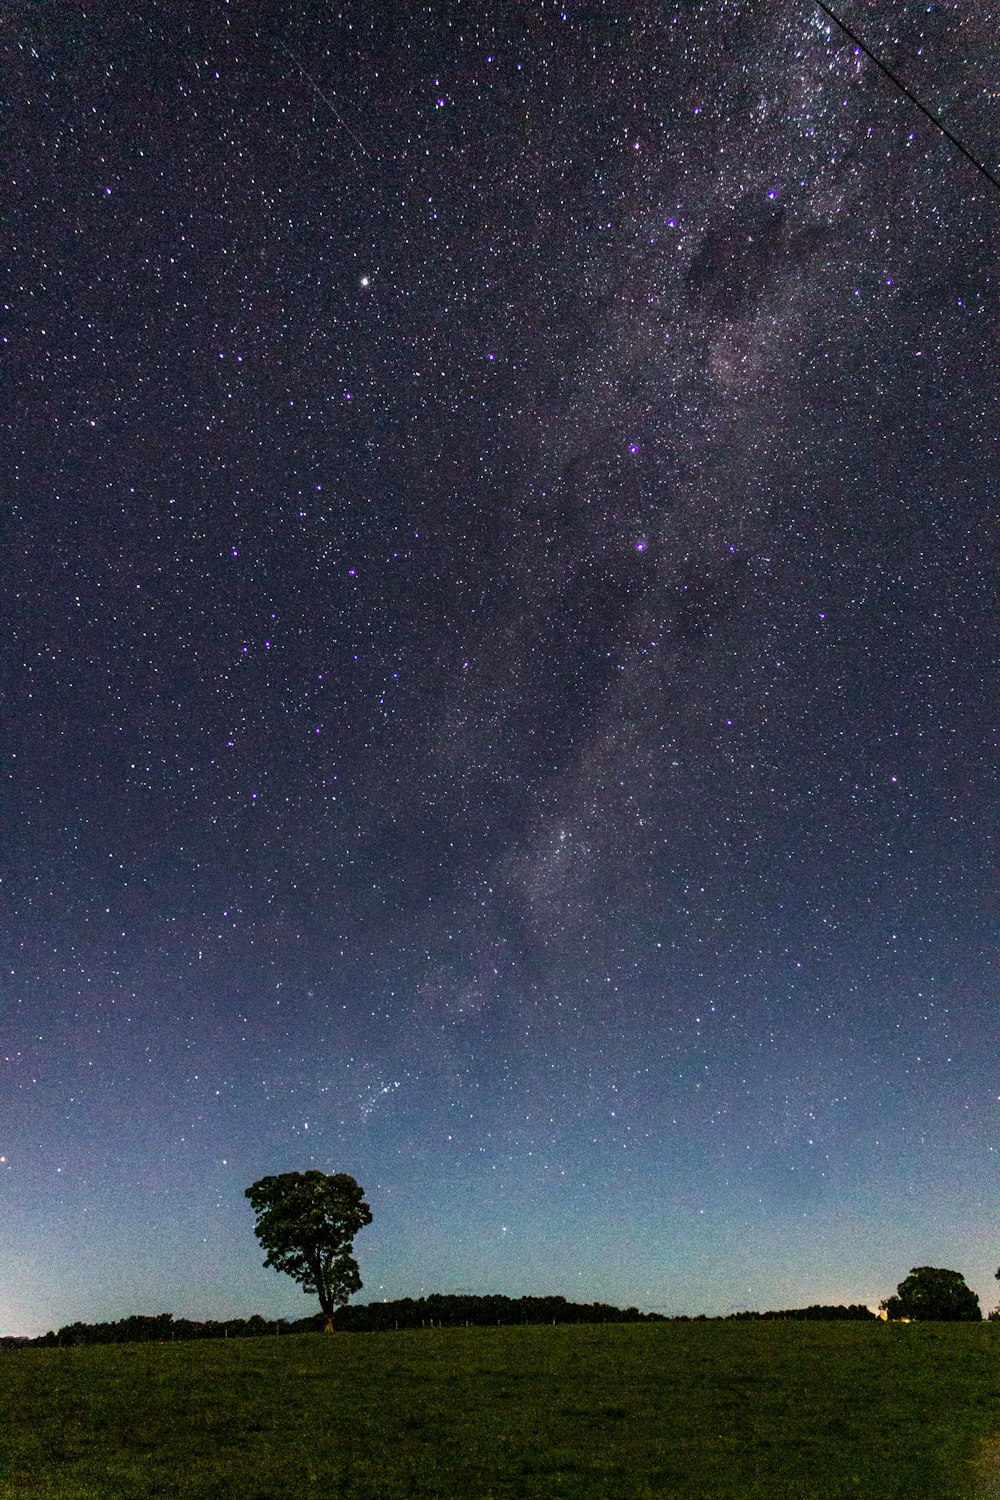 Zeitrafferfoto eines Baumes in der Nacht